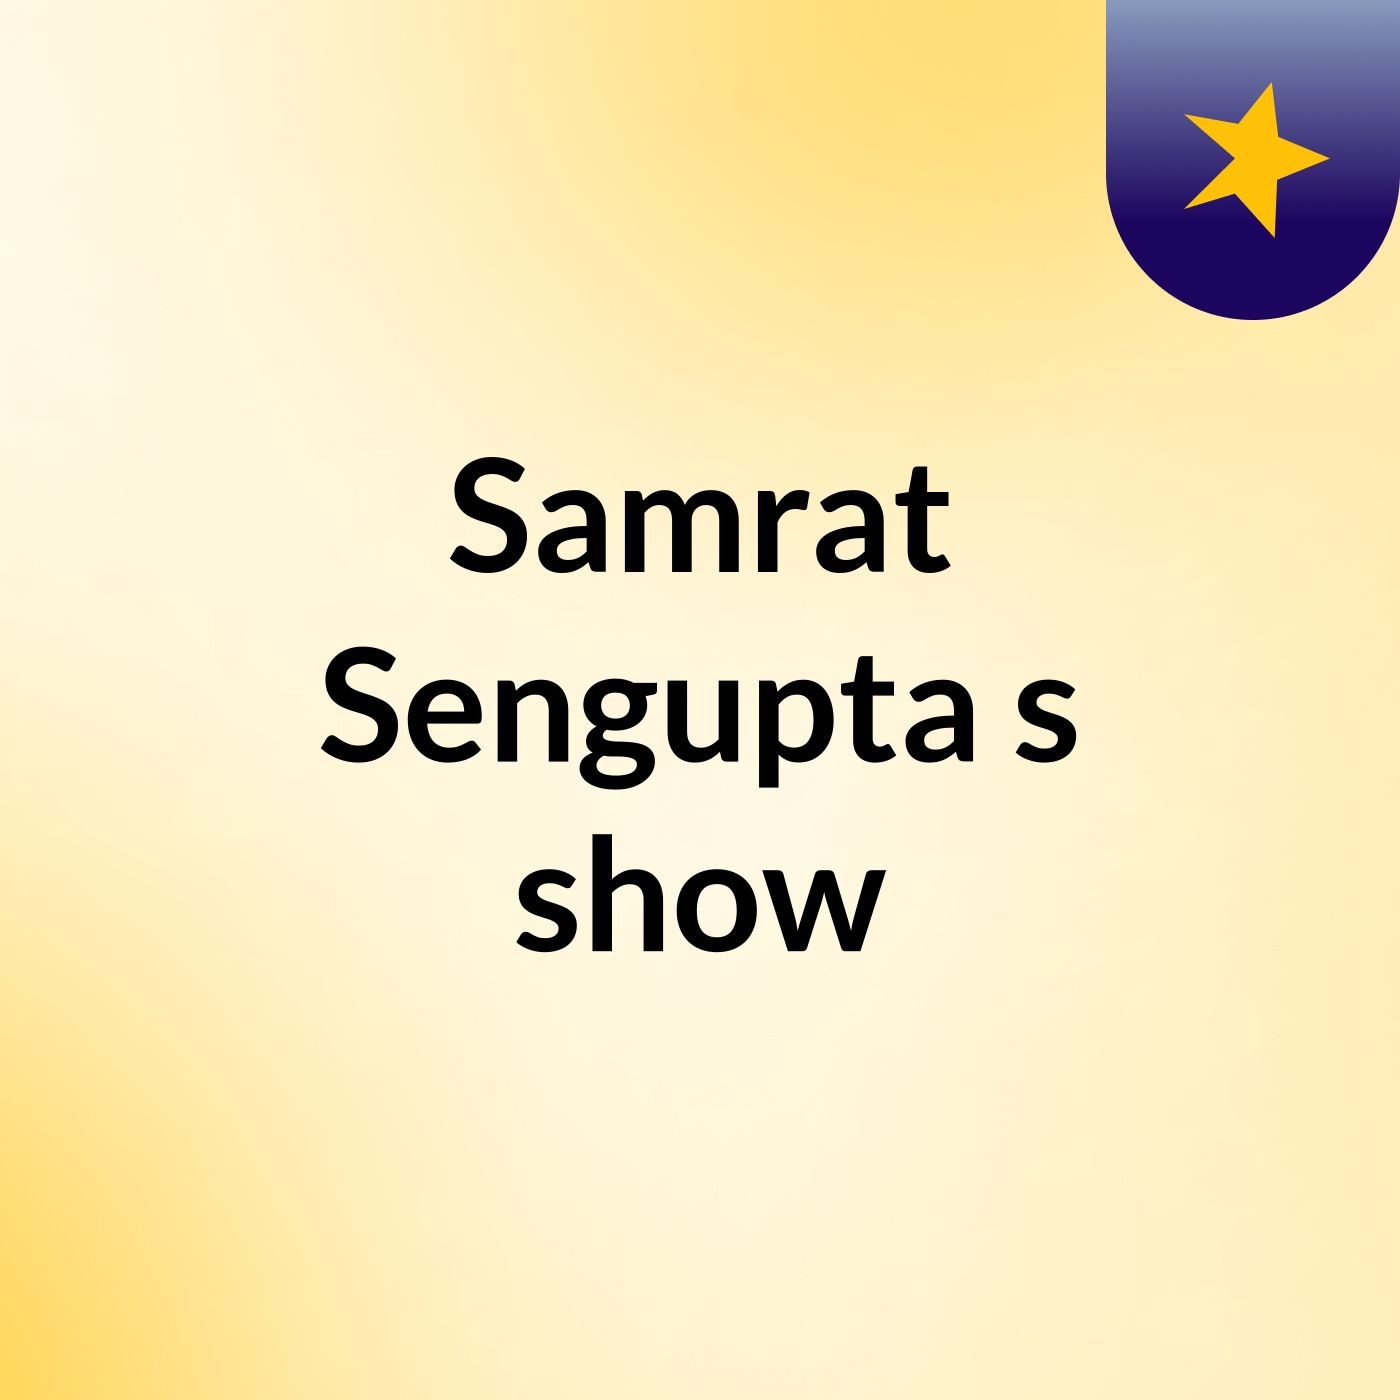 Samrat Sengupta's show